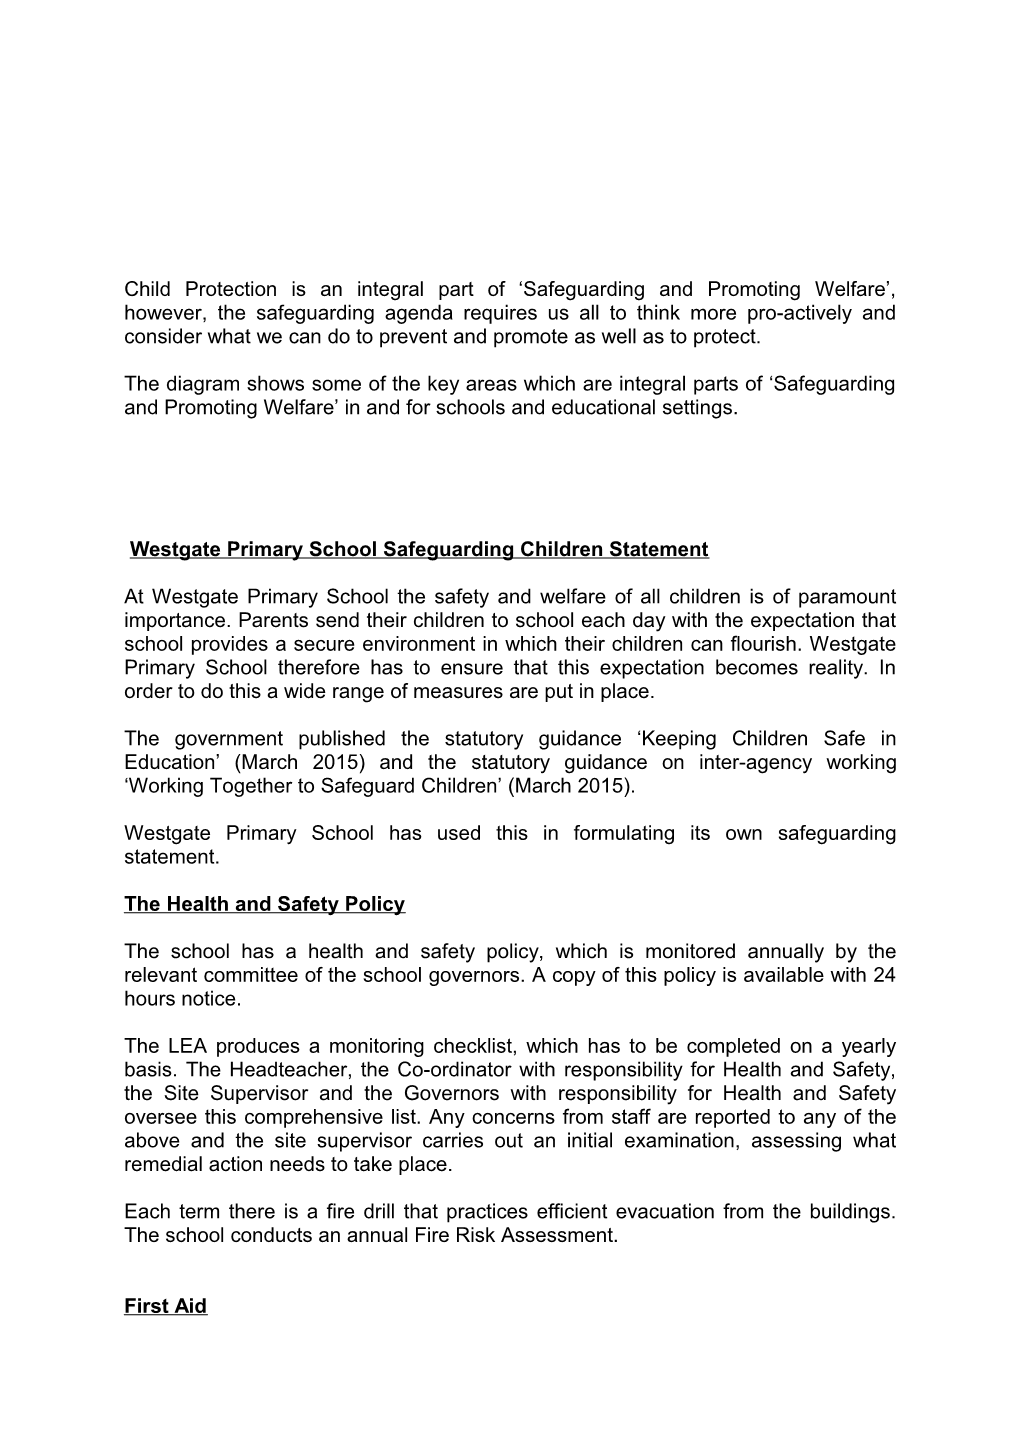 Westgate Primary School Safeguarding Children Statement